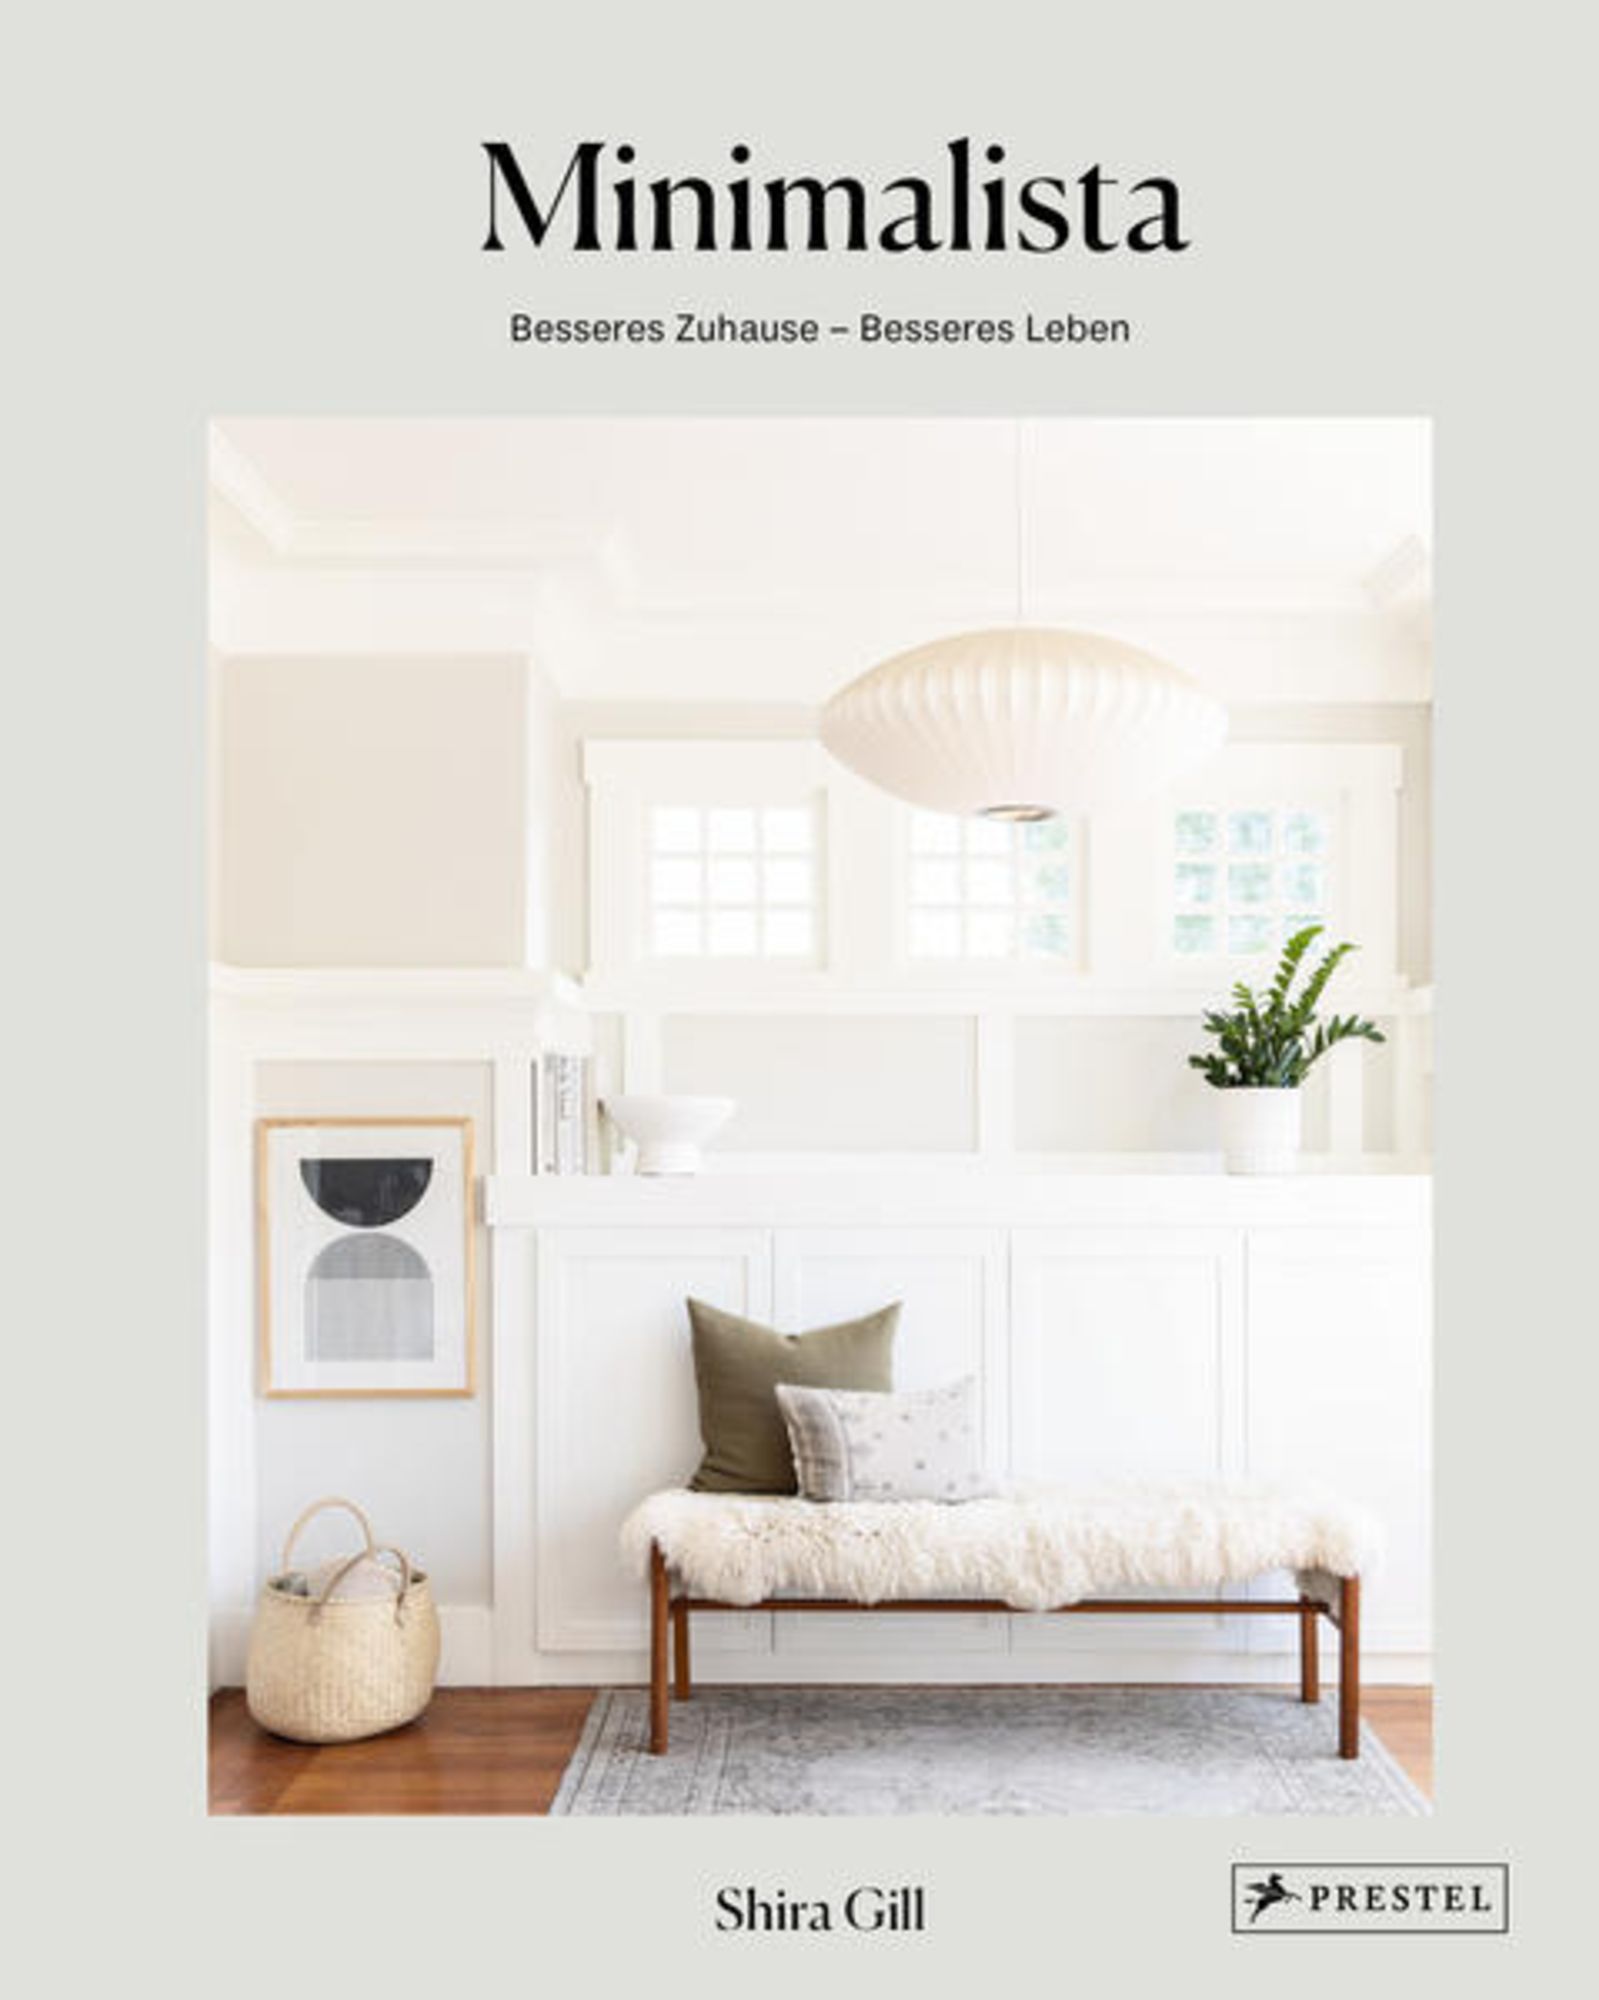 Minimalista: Besseres Zuhause - besseres Leben' von 'Shira Gill